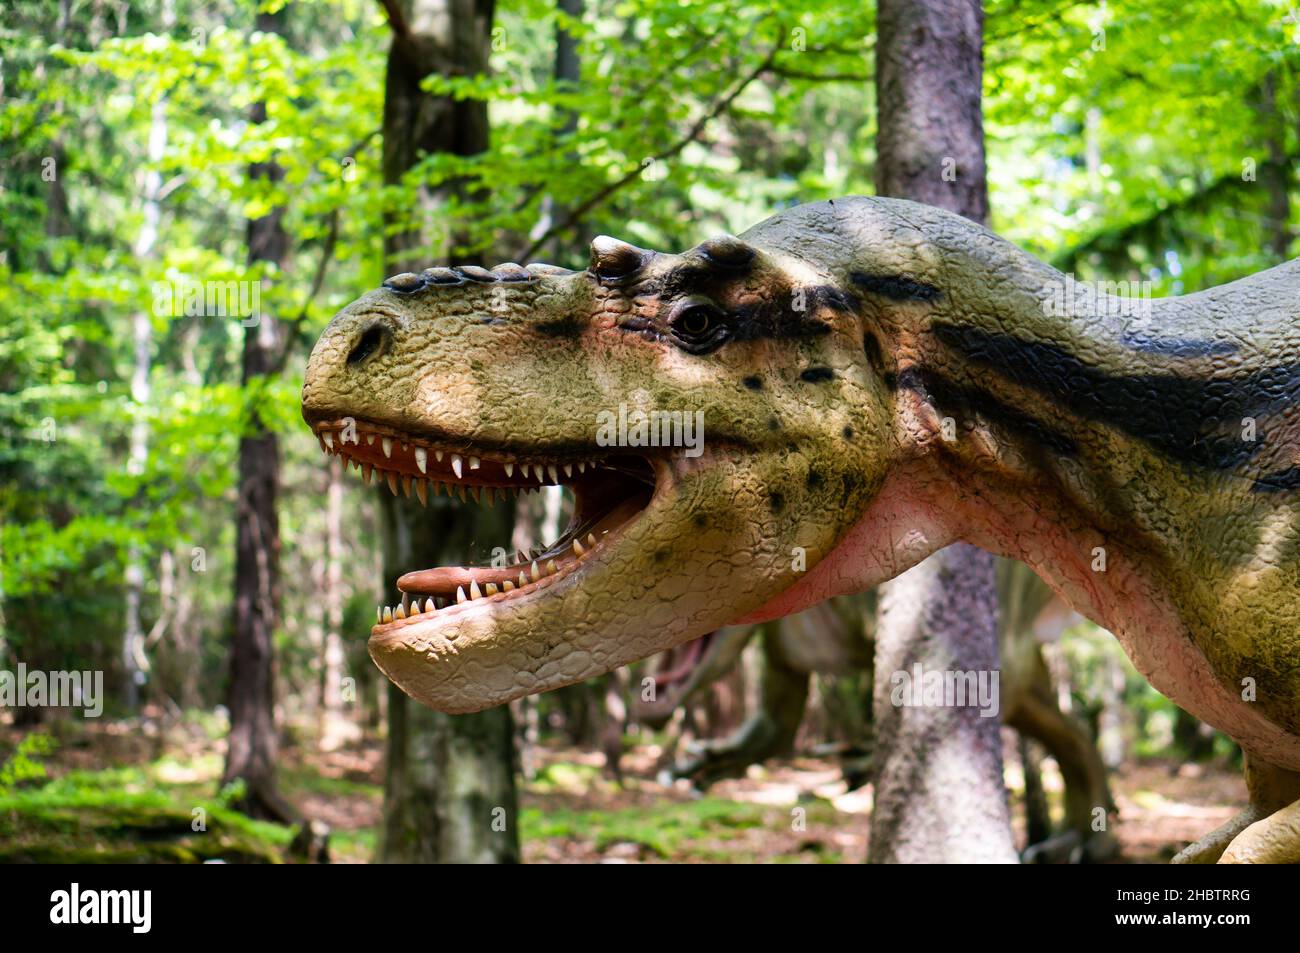 SZKLARSKA POREBA, POLOGNE - 10 mai 2018 : gros plan de la tête du modèle de dinosaure effrayant Albertosaurus dans le parc Dino, par une journée ensoleillée Banque D'Images